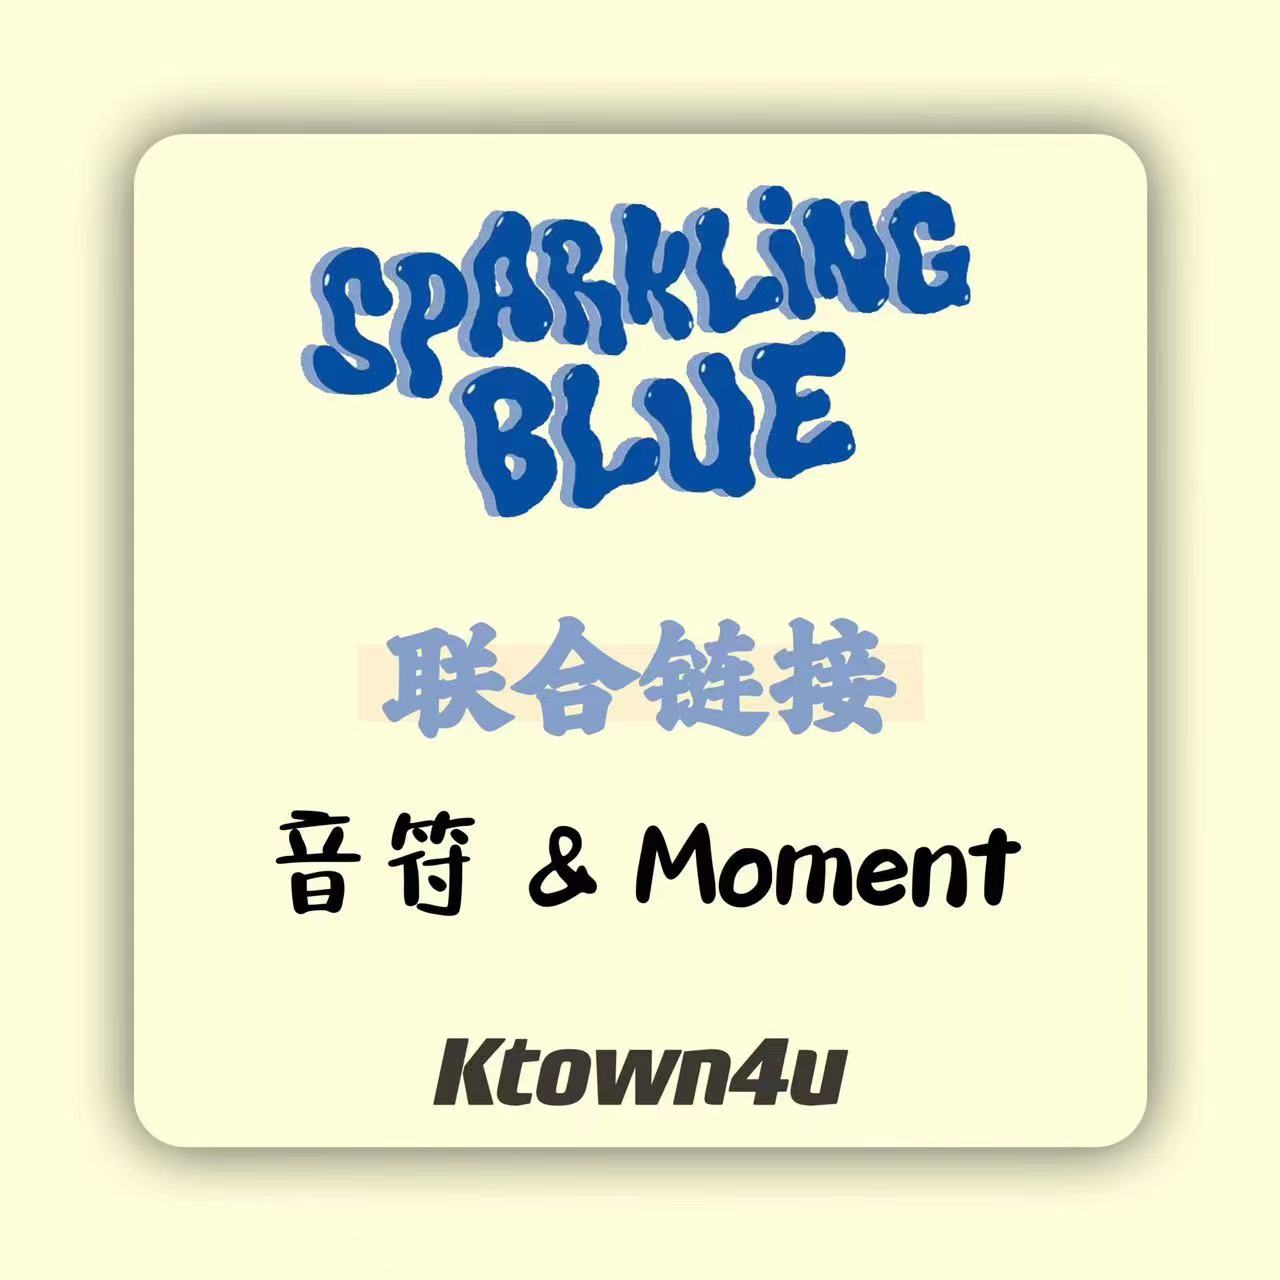 [全款 裸专] [Ktown4u特典赠送] TWS - 迷你1辑 [Sparkling Blue] (随机版本)_两站联合